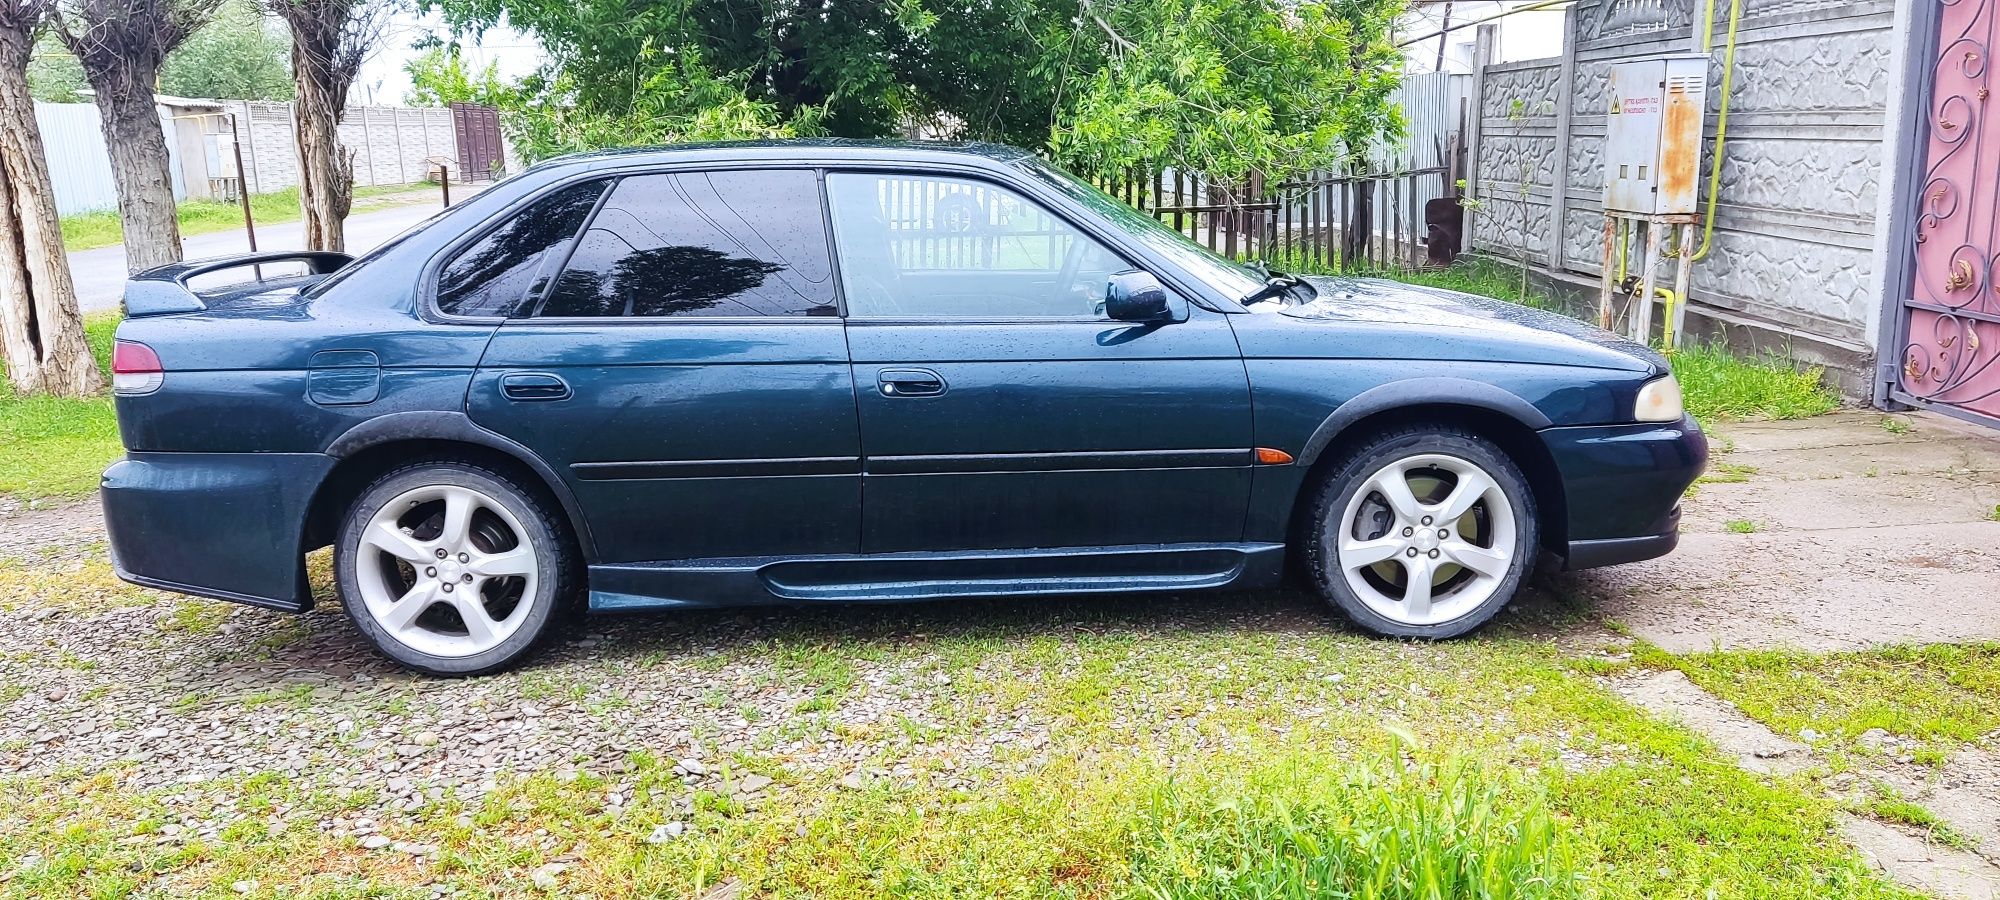 Продам авто Subaru legacy bd 1997 год